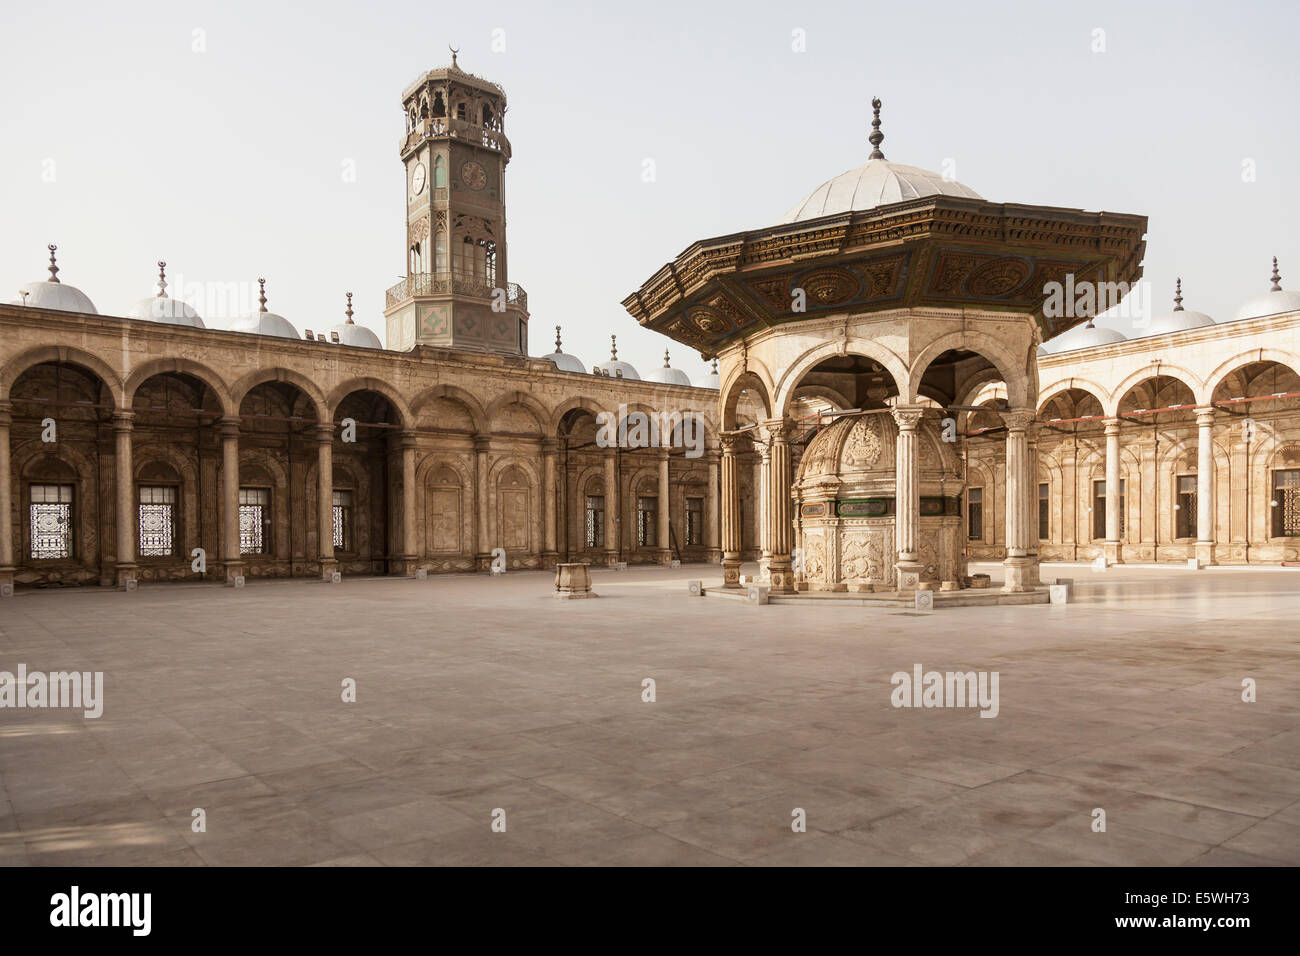 Innenhof und Clock Tower, Alabaster-Moschee / Moschee von Muhammad Ali Pasha in der Zitadelle in Kairo, Ägypten Stockfoto